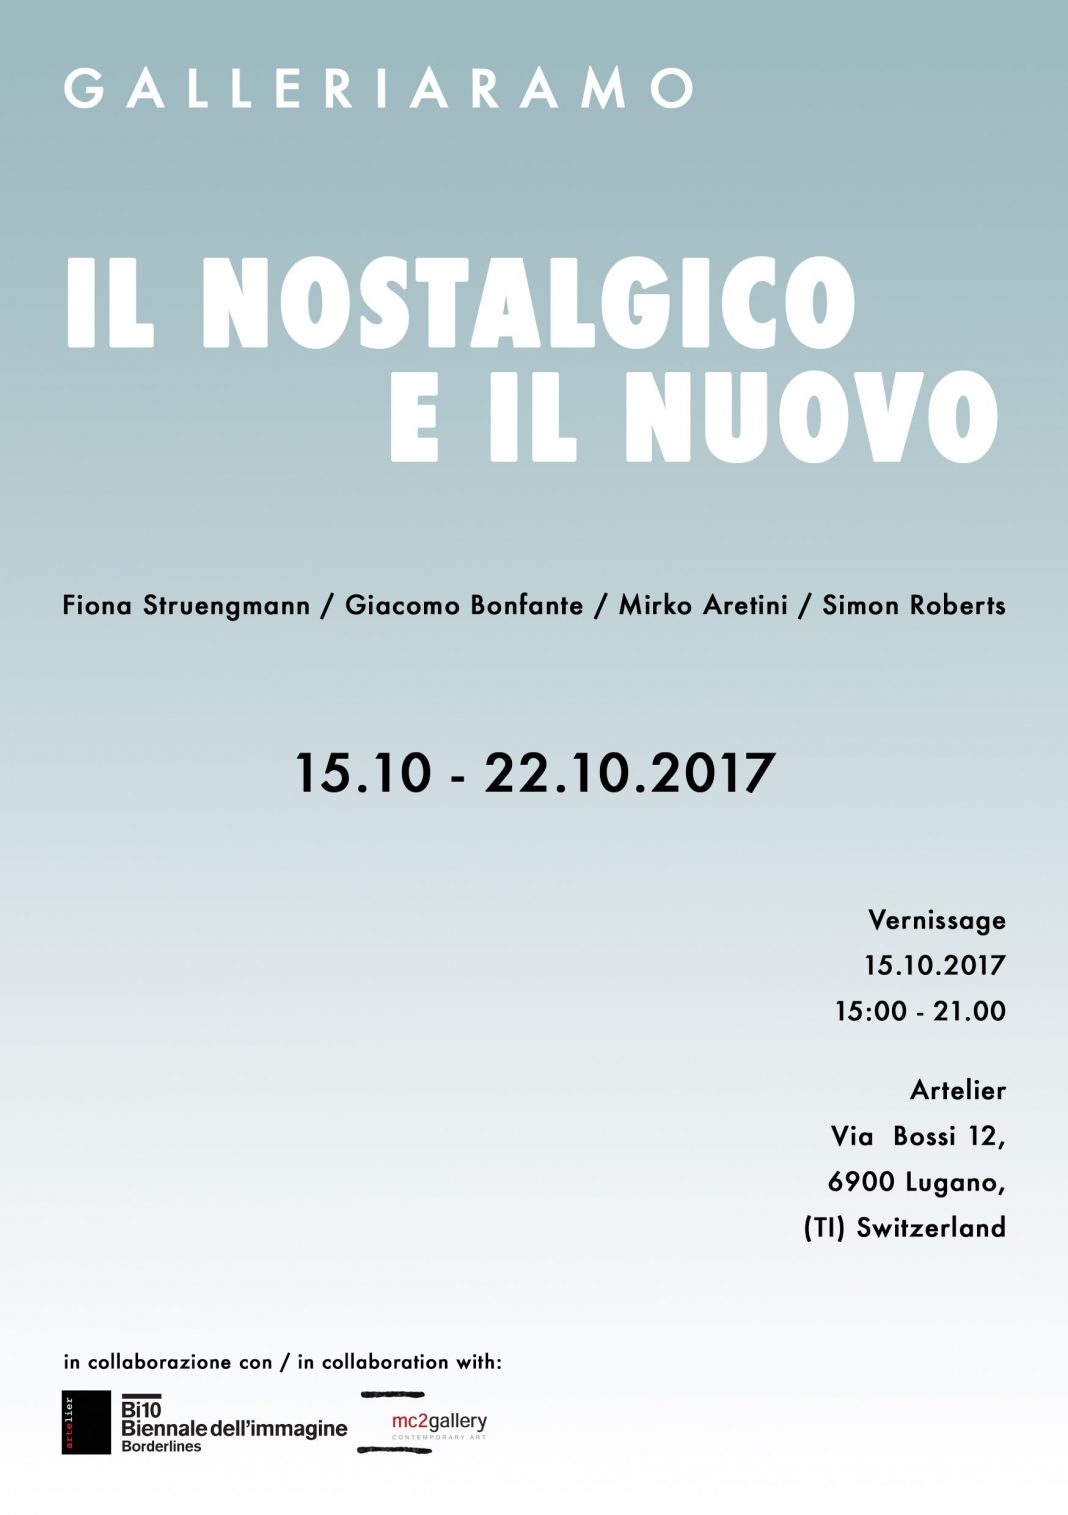 Il Nostalgico e Il Nuovohttps://www.exibart.com/repository/media/eventi/2017/09/il-nostalgico-e-il-nuovo-1068x1515.jpg